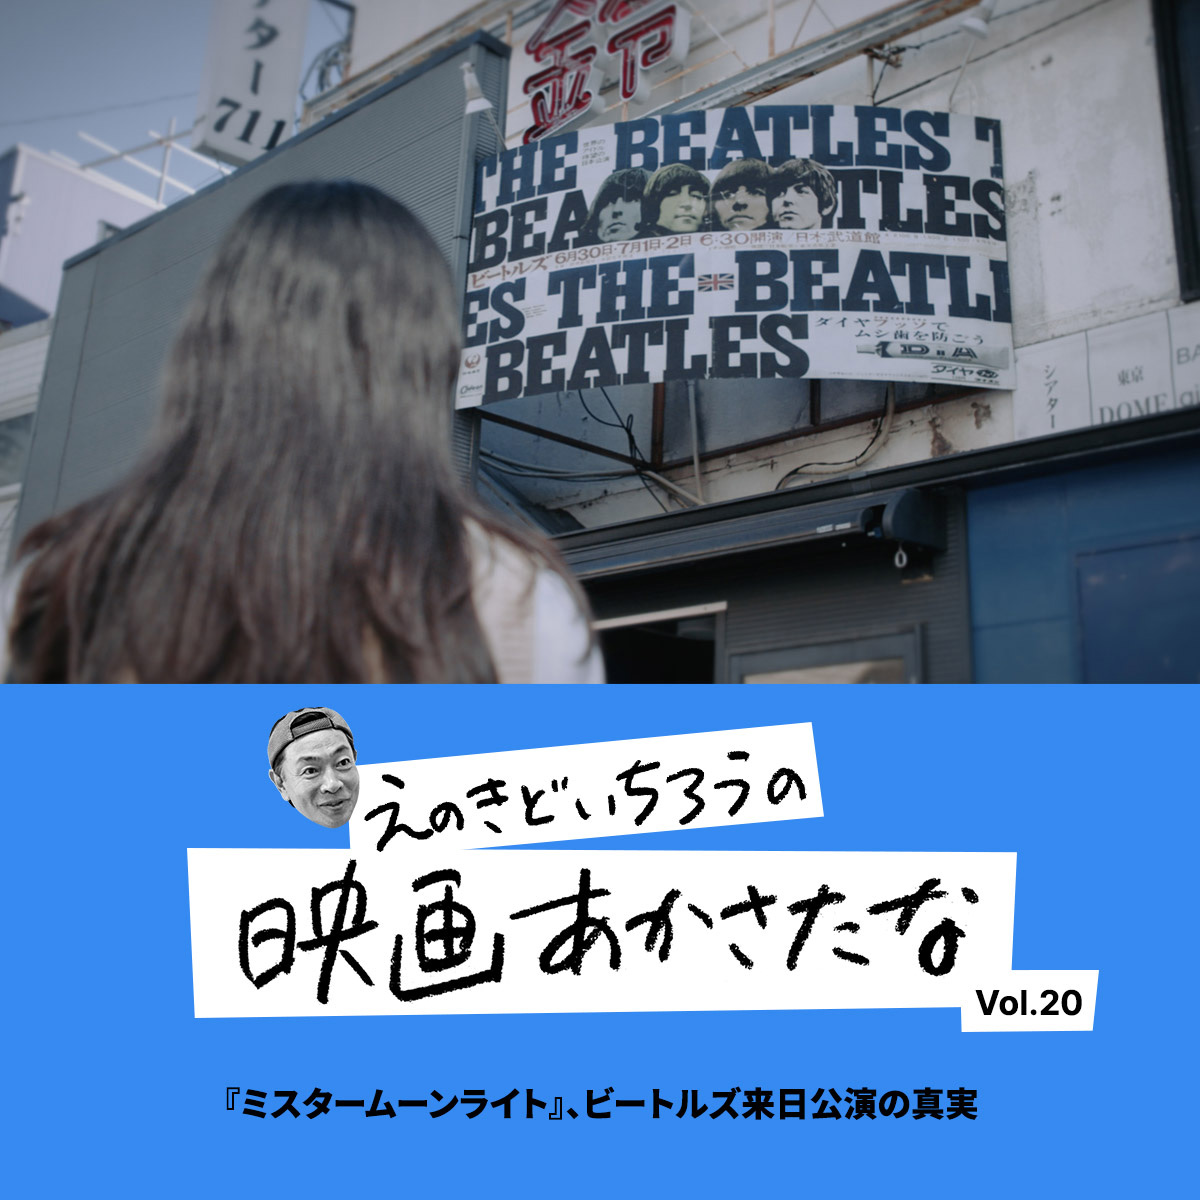 『ミスタームーンライト』、ビートルズ来日公演の真実【えのきどいちろうの映画あかさたな Vol.20】